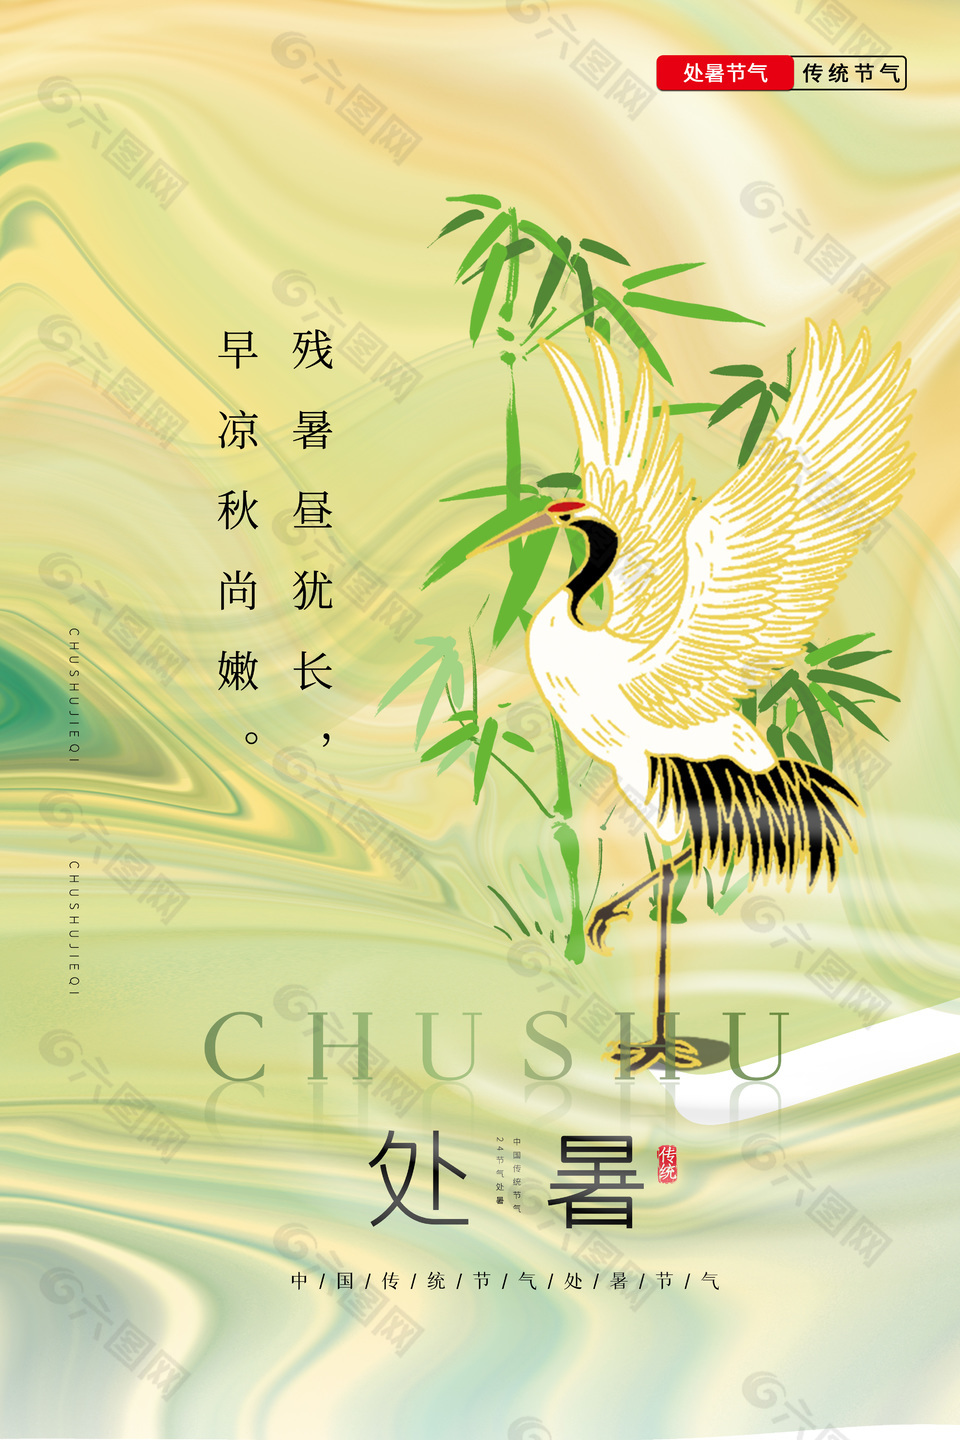 中国风处暑节气传统文化海报素材下载